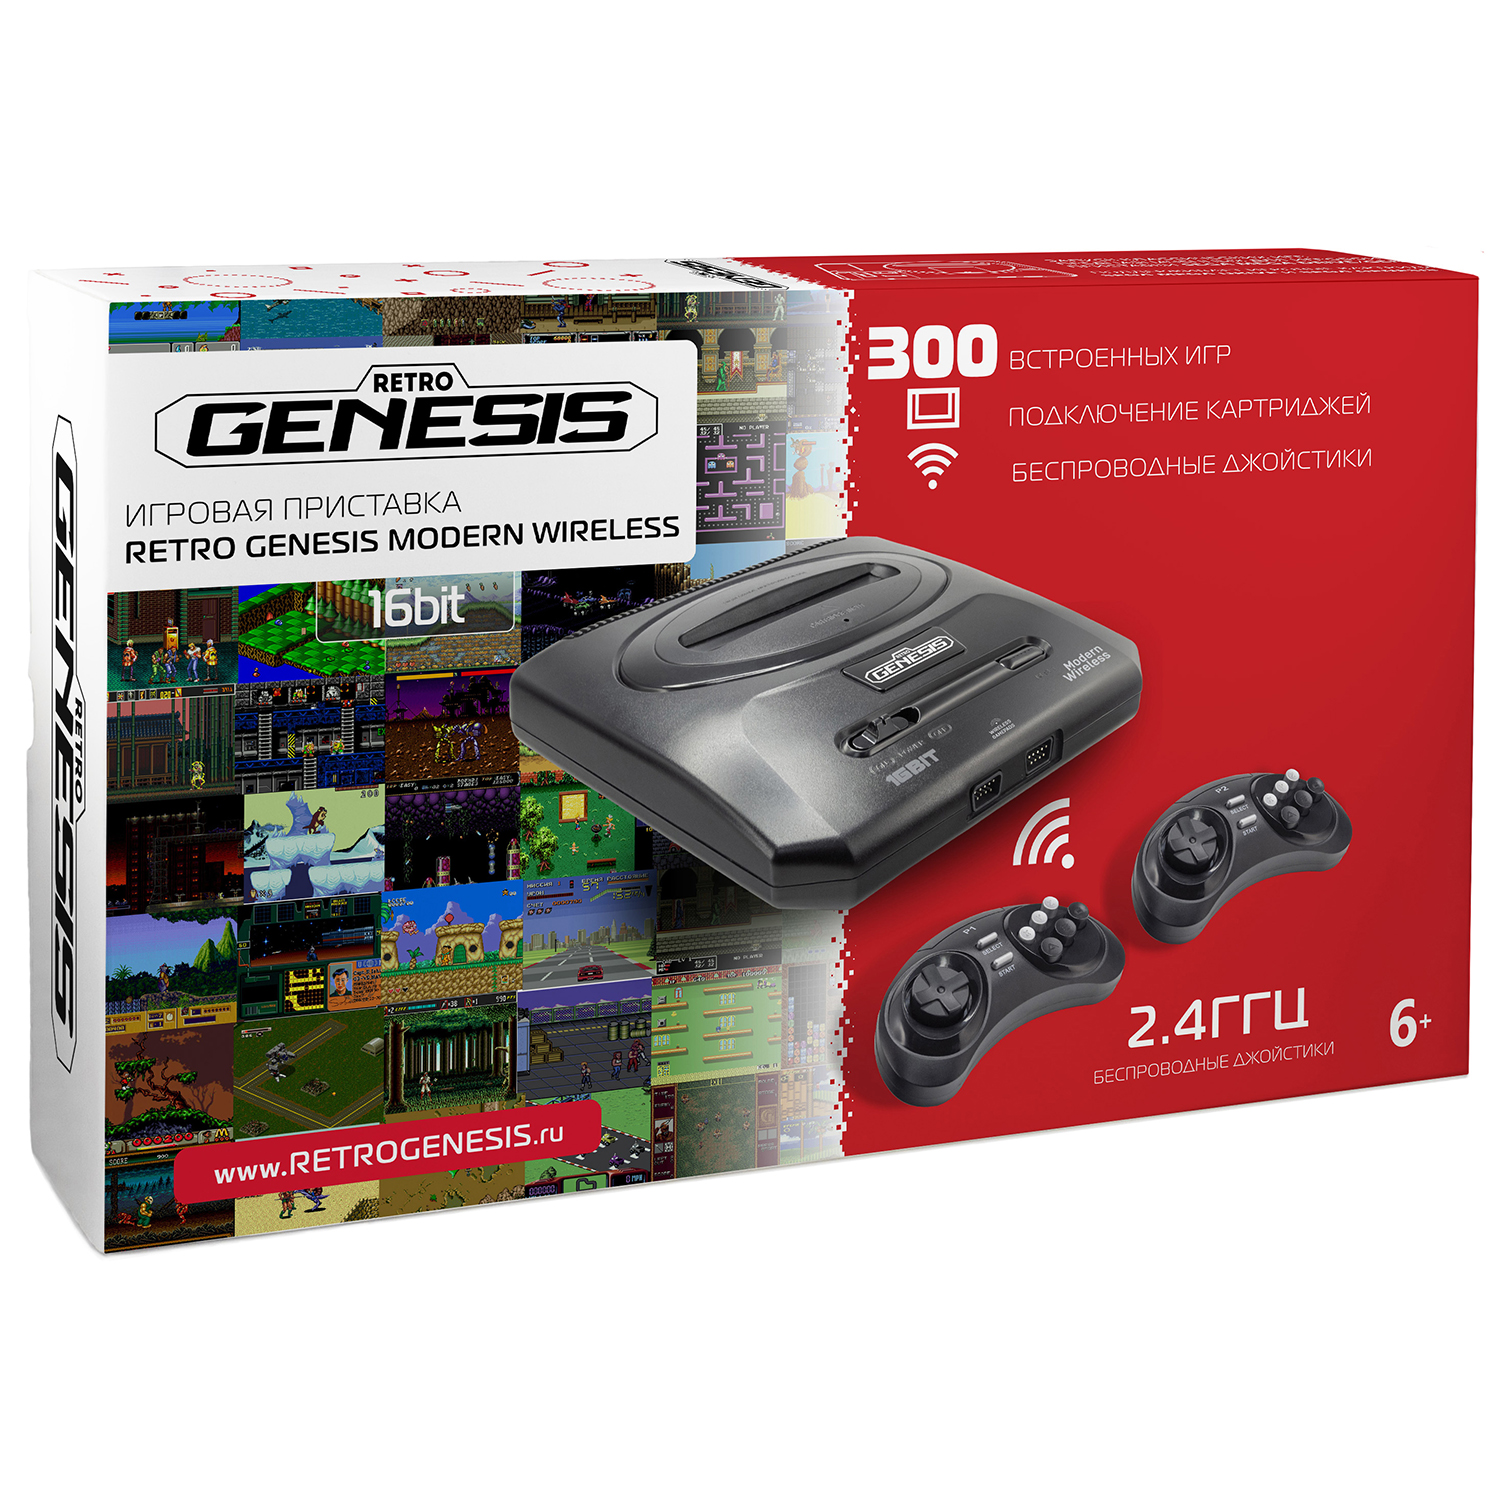 Игровая приставка для детей Retro Genesis SEGA Modern Wireless + 300 игр /+ 2 беспроводных джойстика 2.4ГГц - фото 1